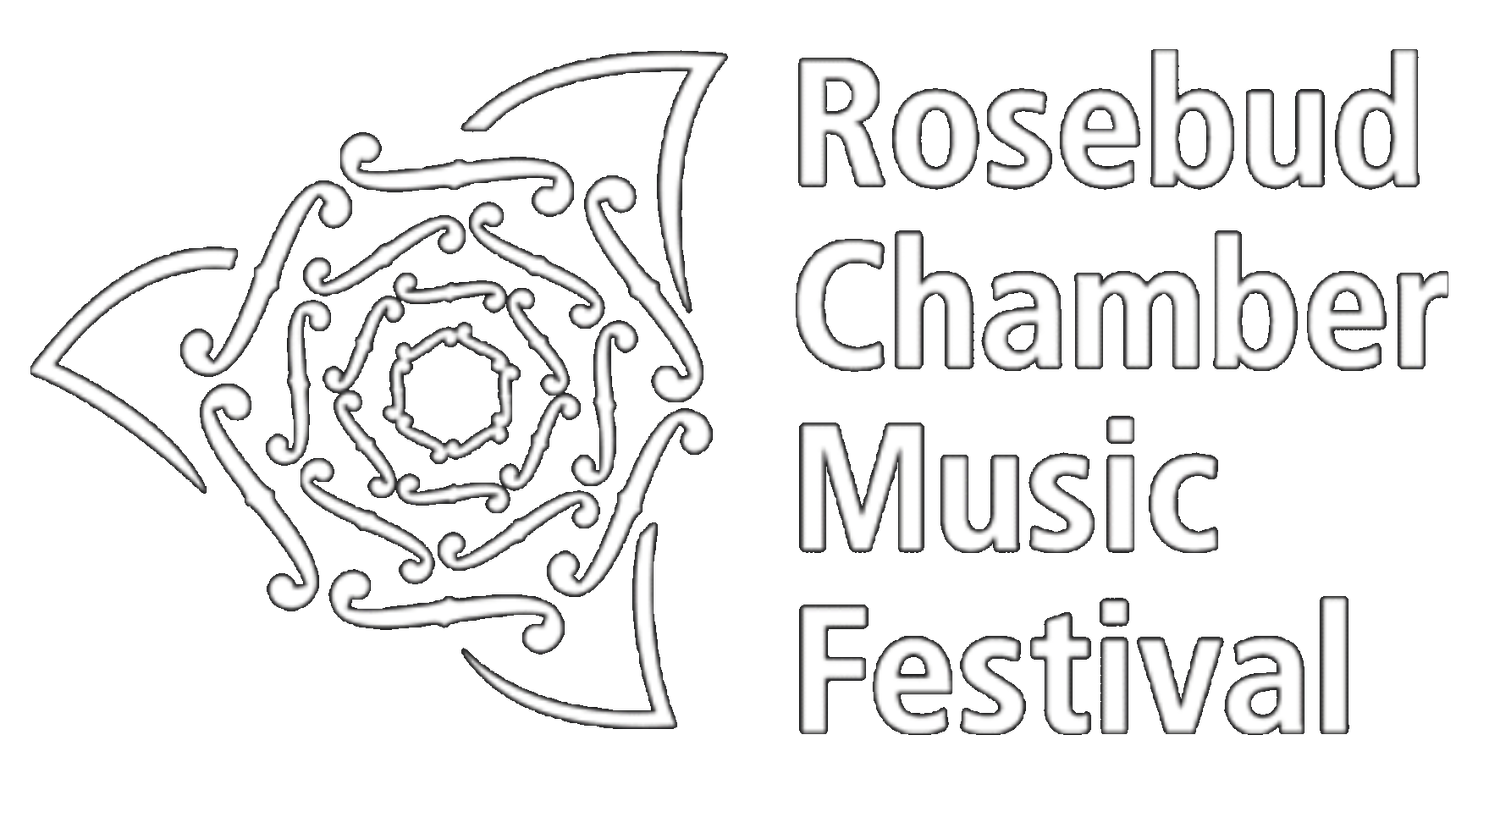 Rosebud Chamber Music Festival